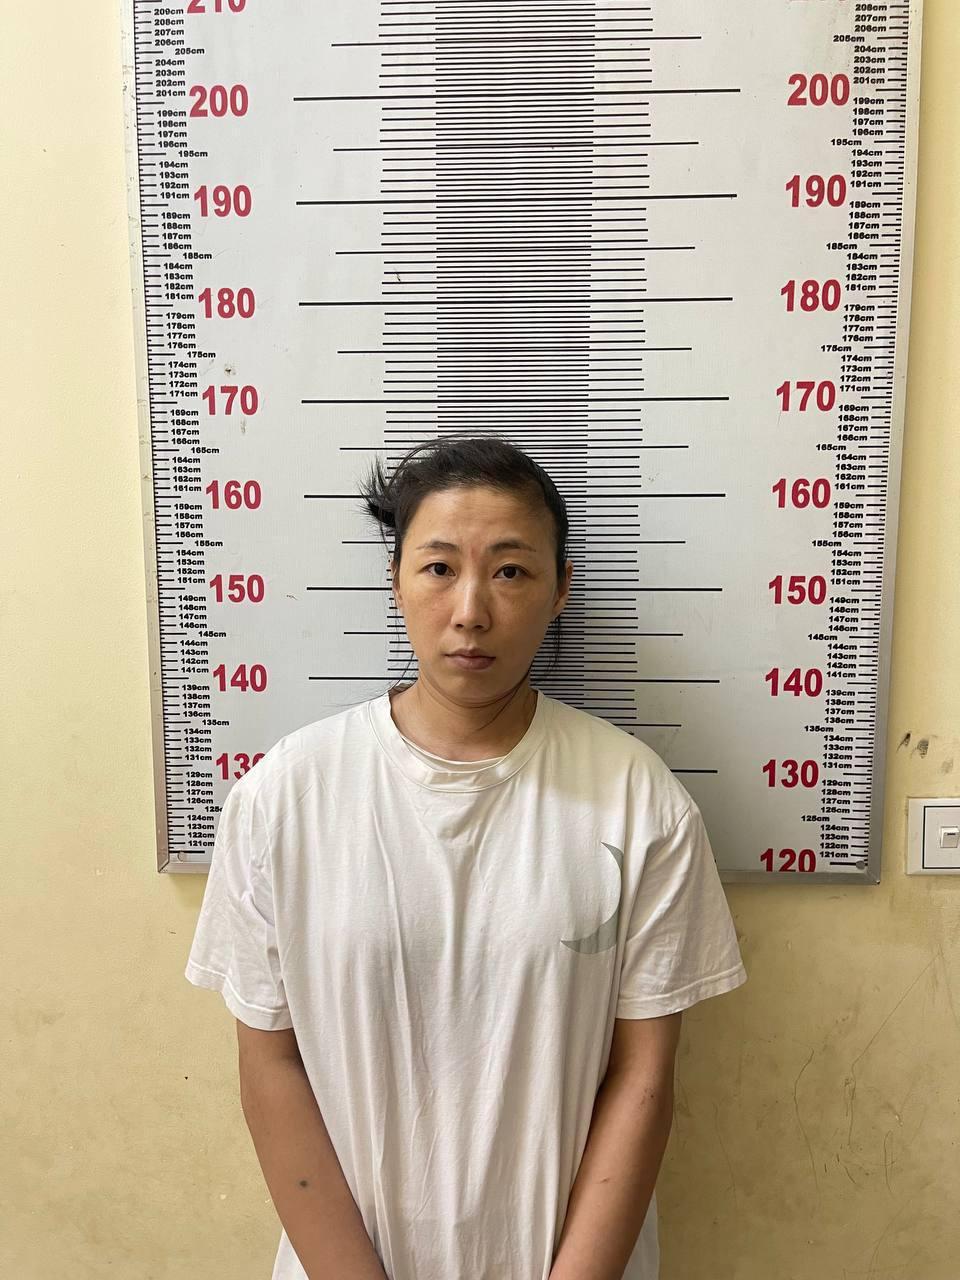 カンボジア韓国人BJ死亡事件の被疑者逮捕